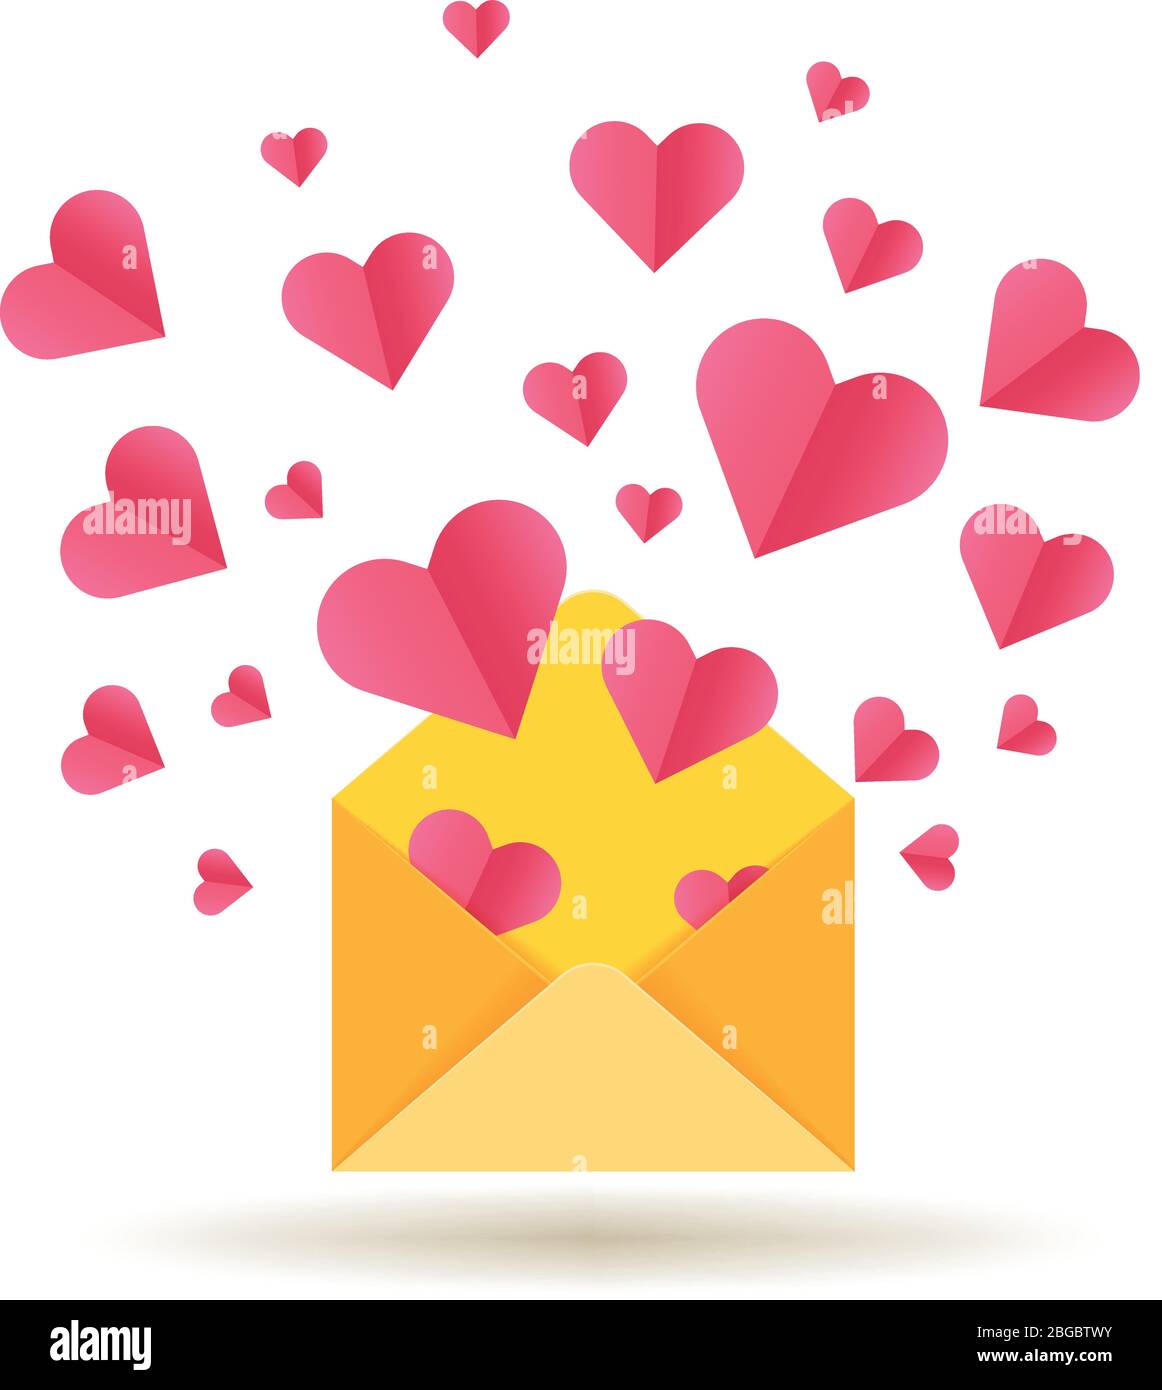 Carte vectorielle Happy Valentines Day avec enveloppe ouverte et coeurs rouges. Enveloppe avec coeur rouge, illustration romantique de la Saint-Valentin Illustration de Vecteur